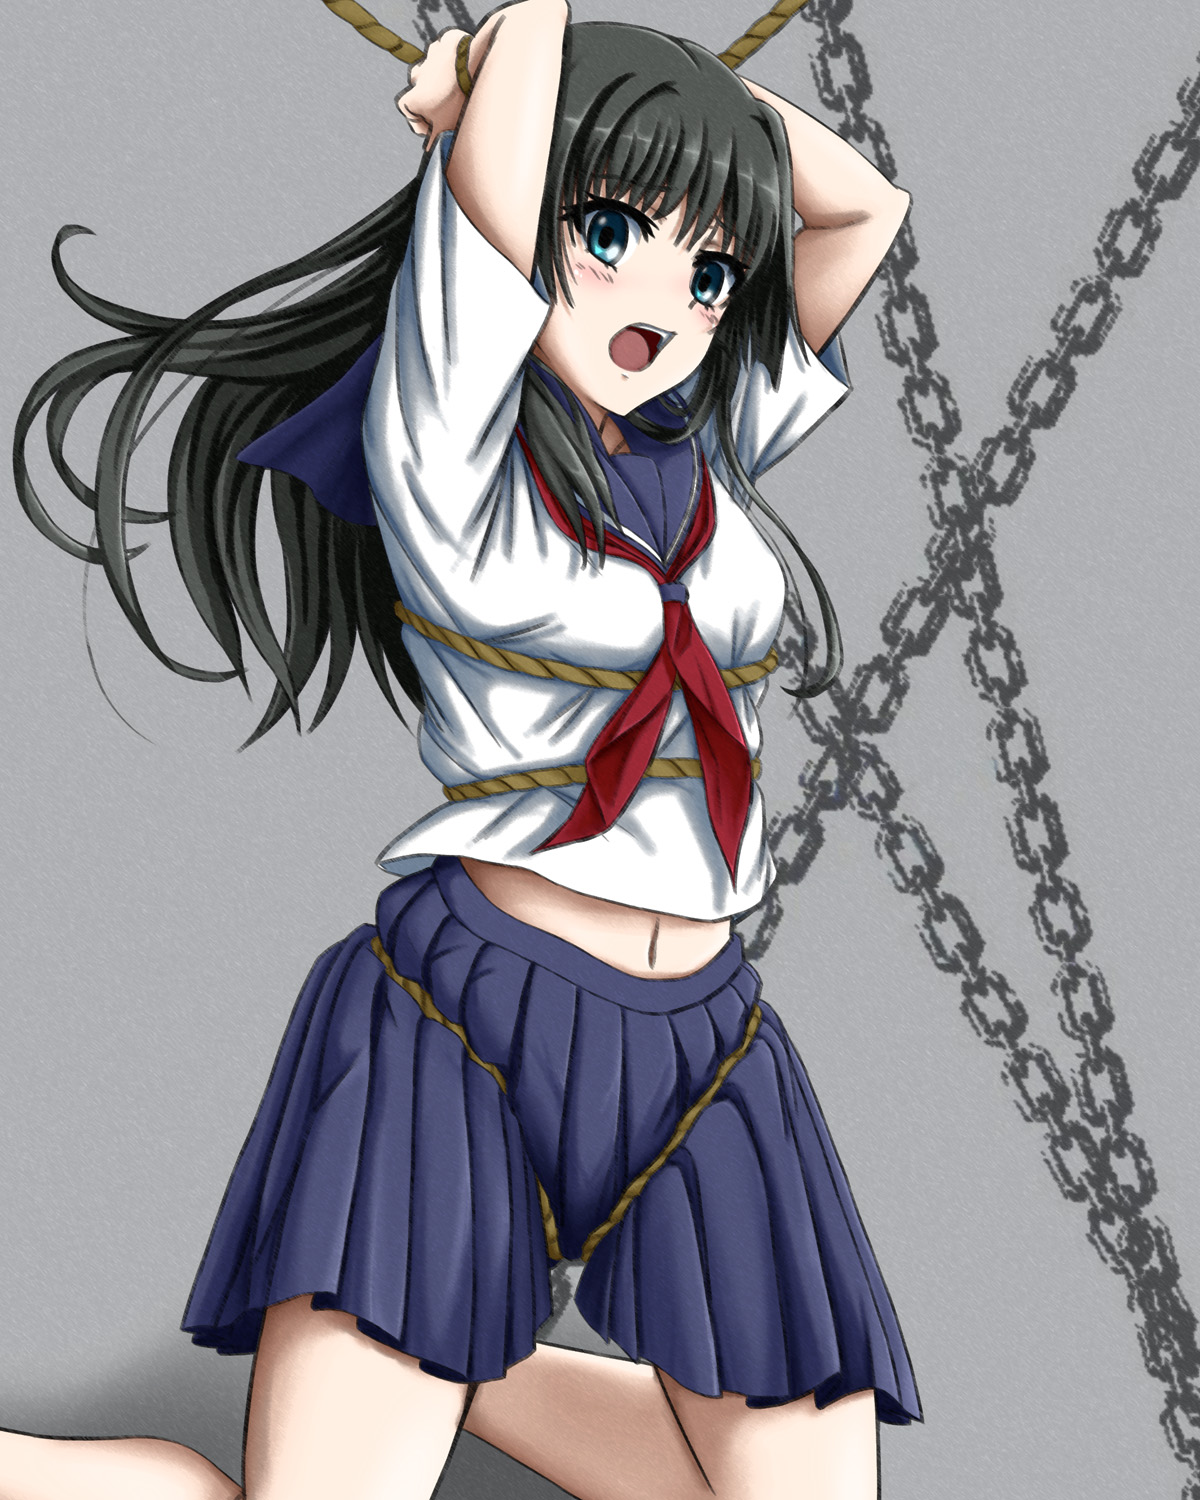 School girl tied up